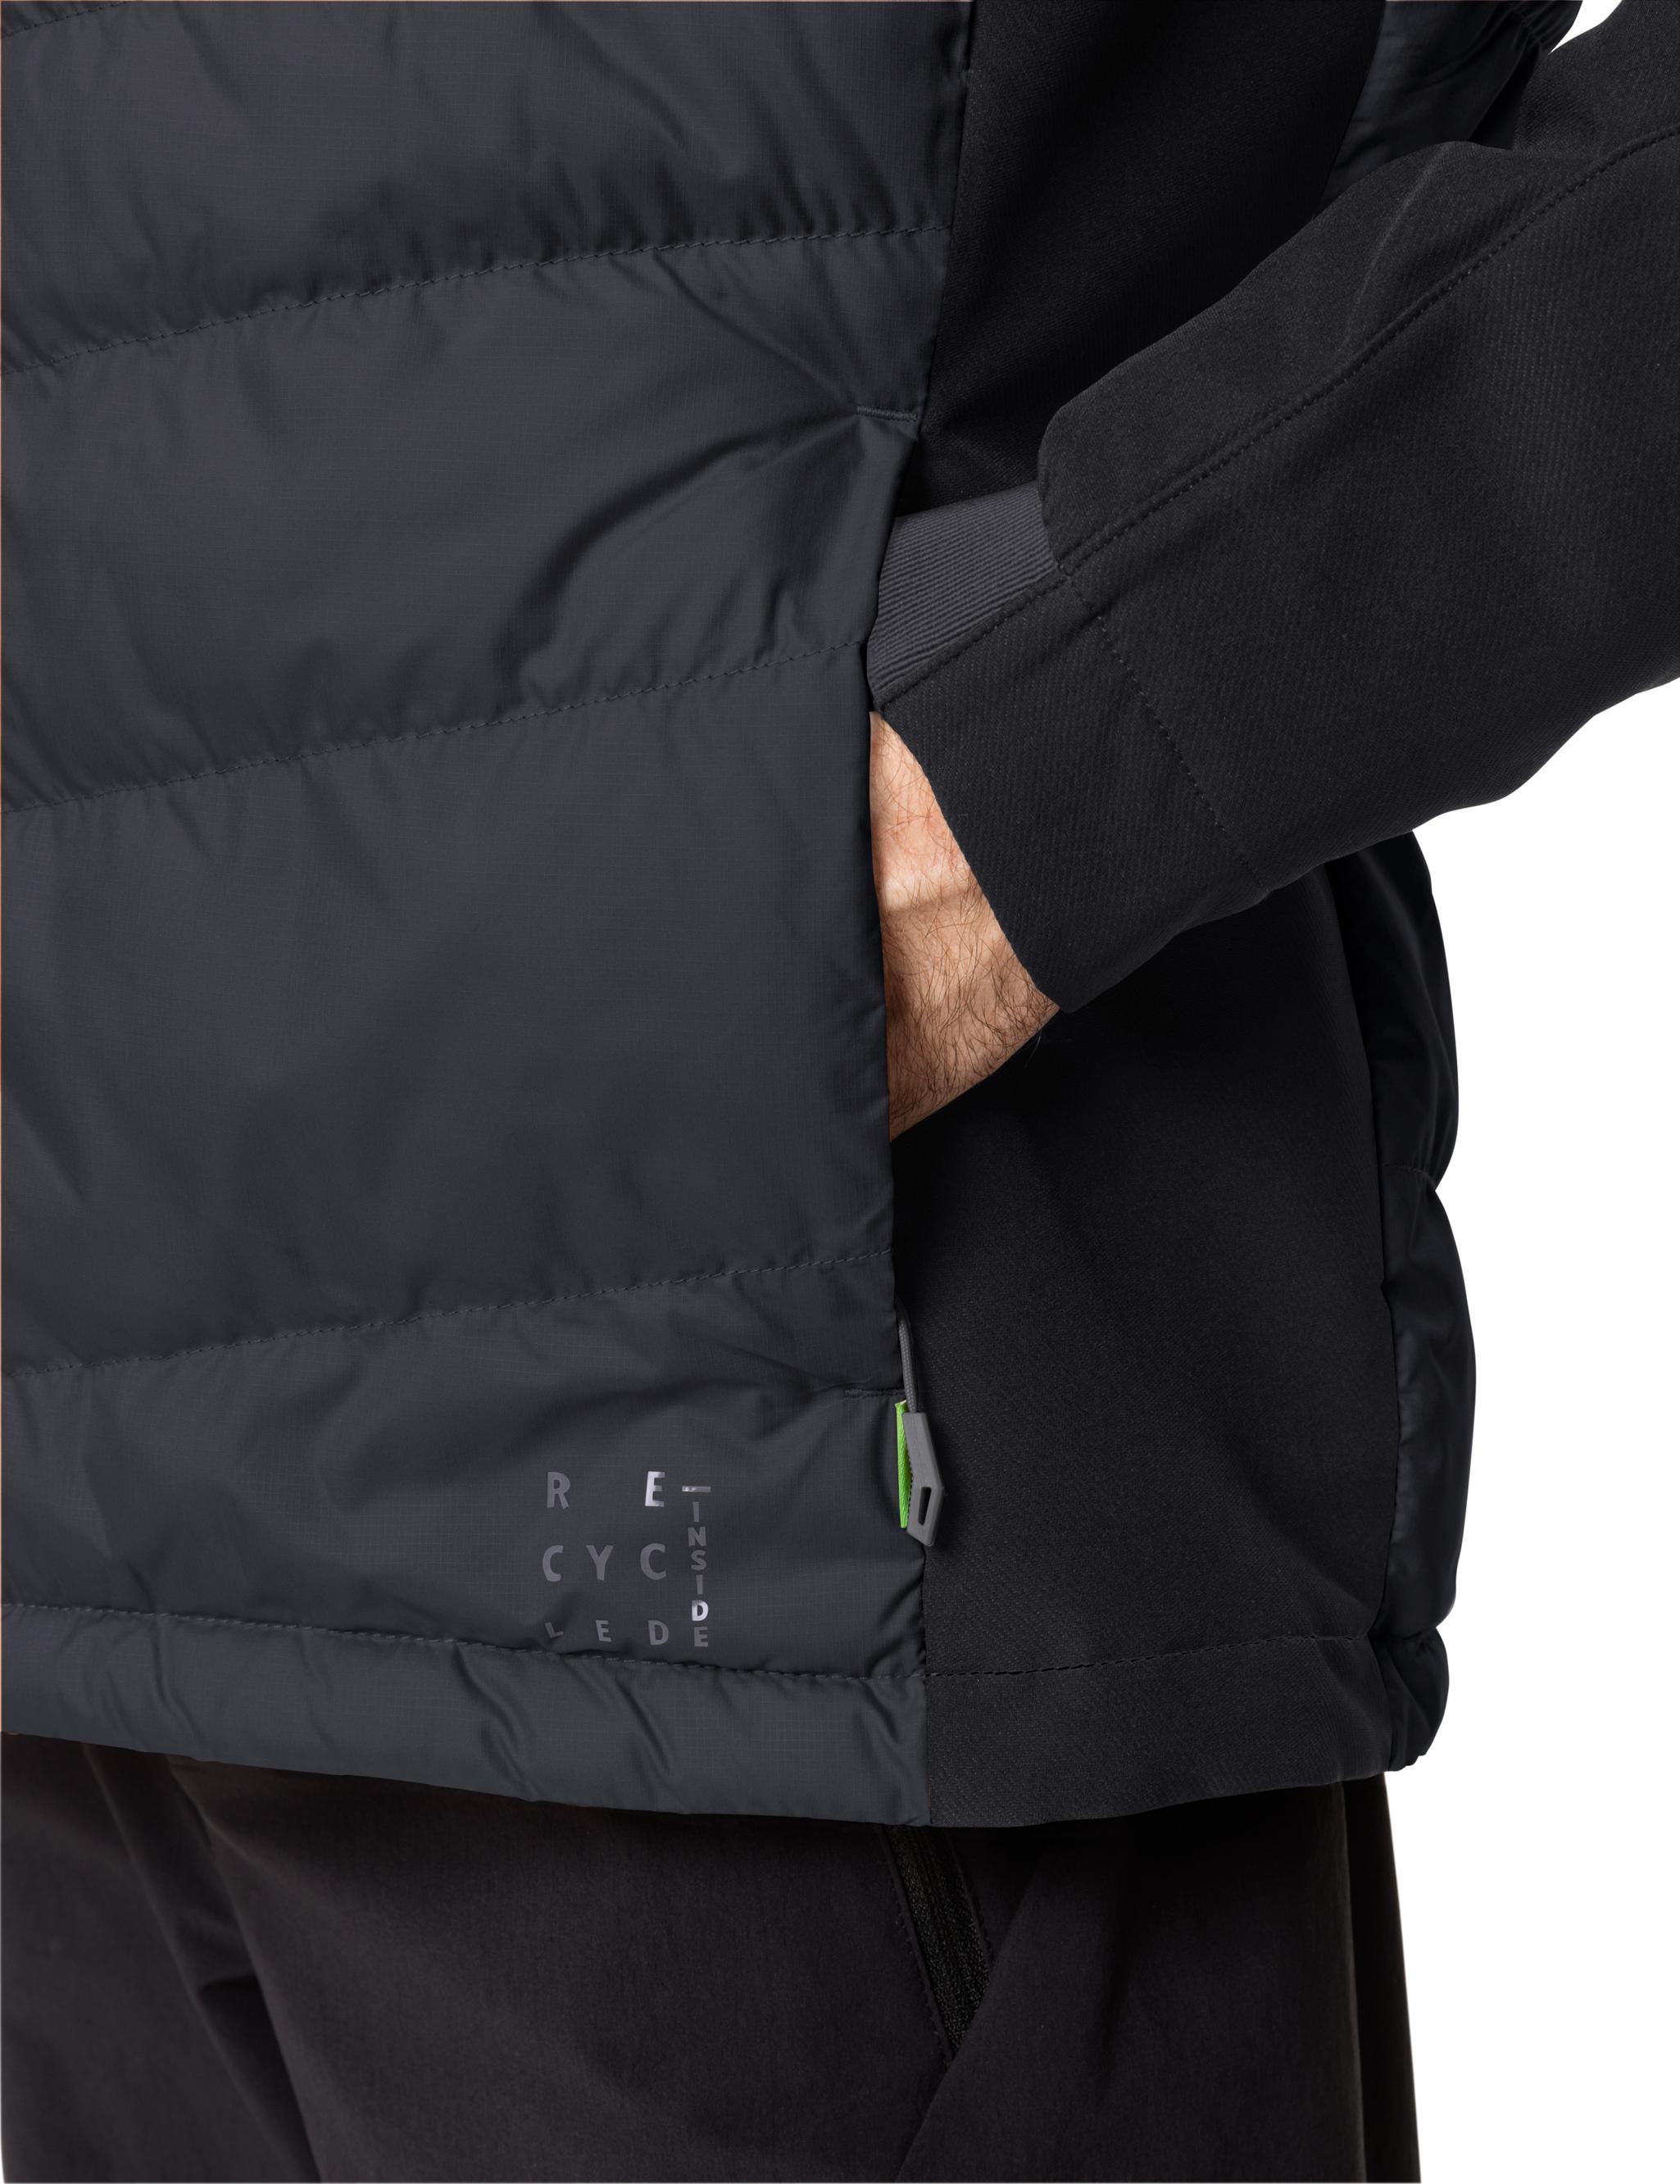 SportScheck Men\'s Shop VAUDE Online kaufen von Hybrid black im Outdoorjacke Jacket Elope Herren